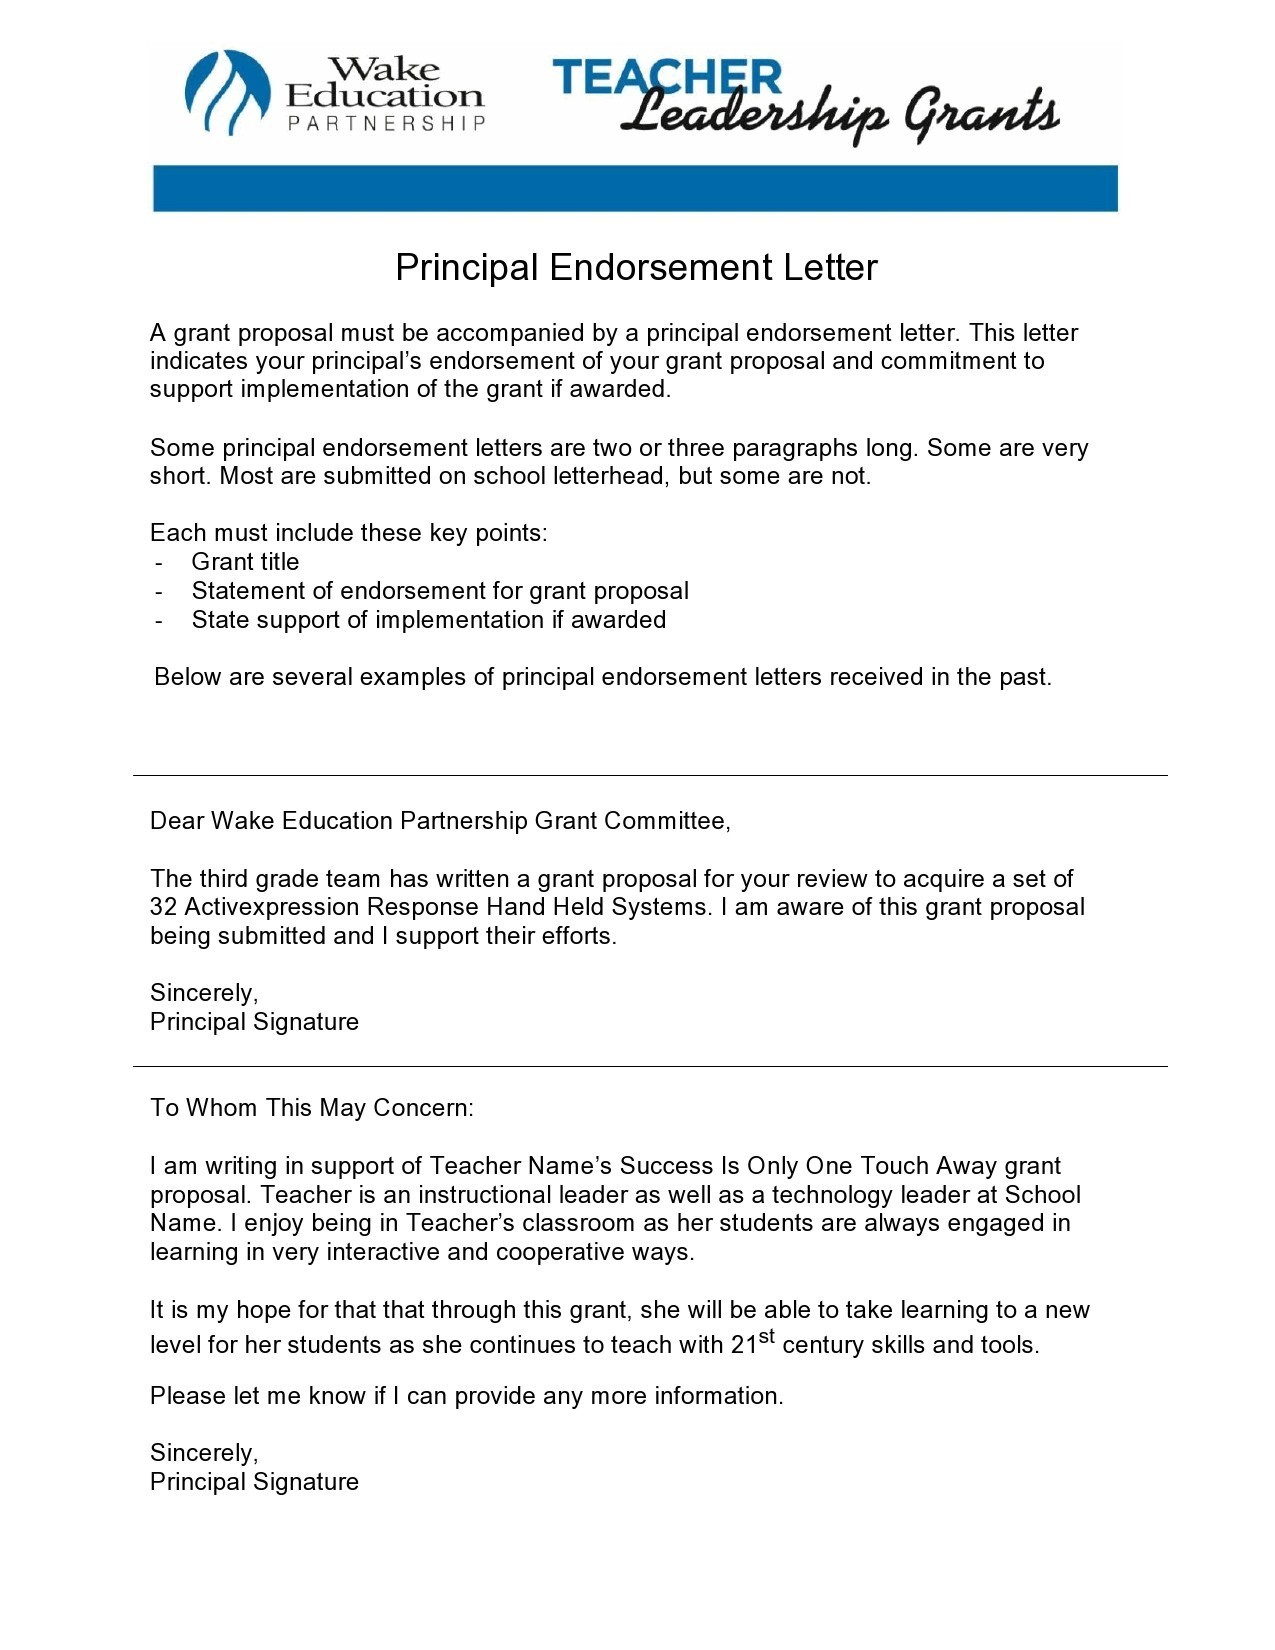 Free endorsement letter 35